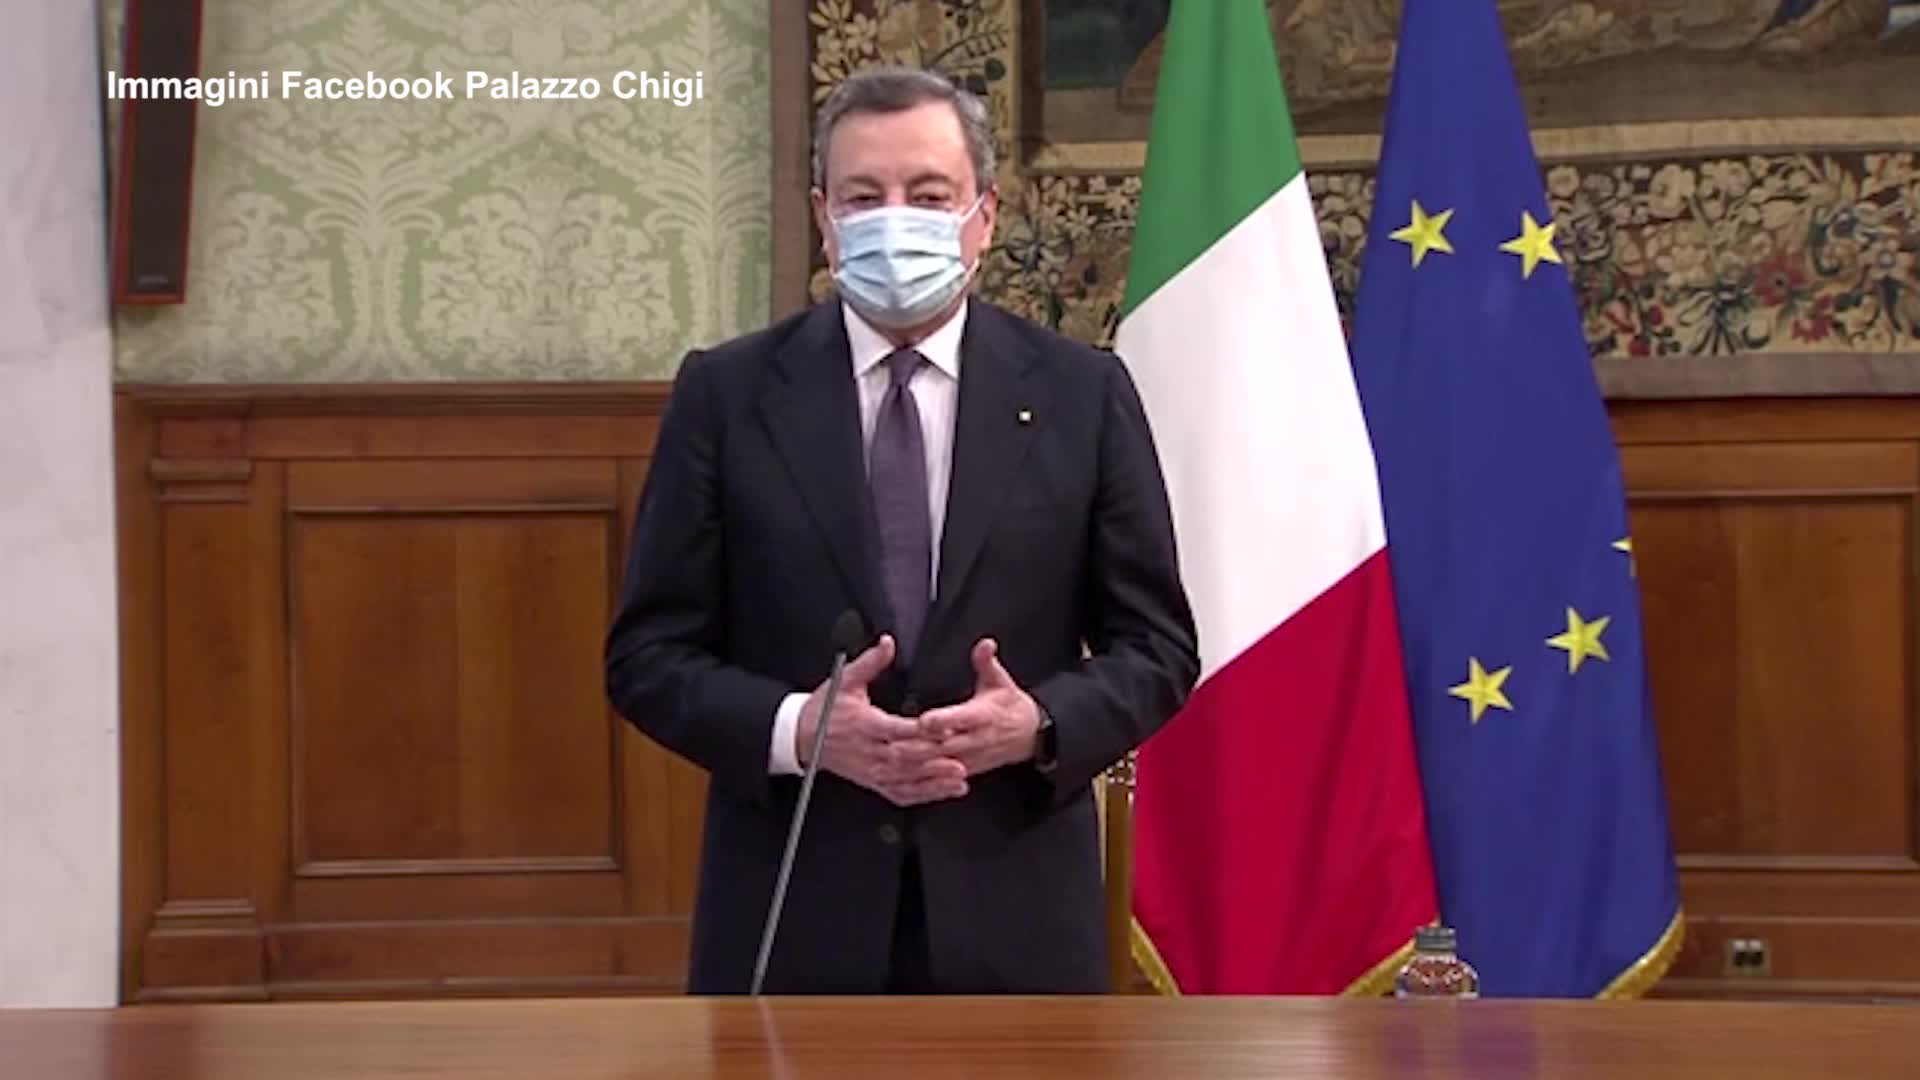 Pubblica amministrazione, Draghi: "Centrale nella pandemia"